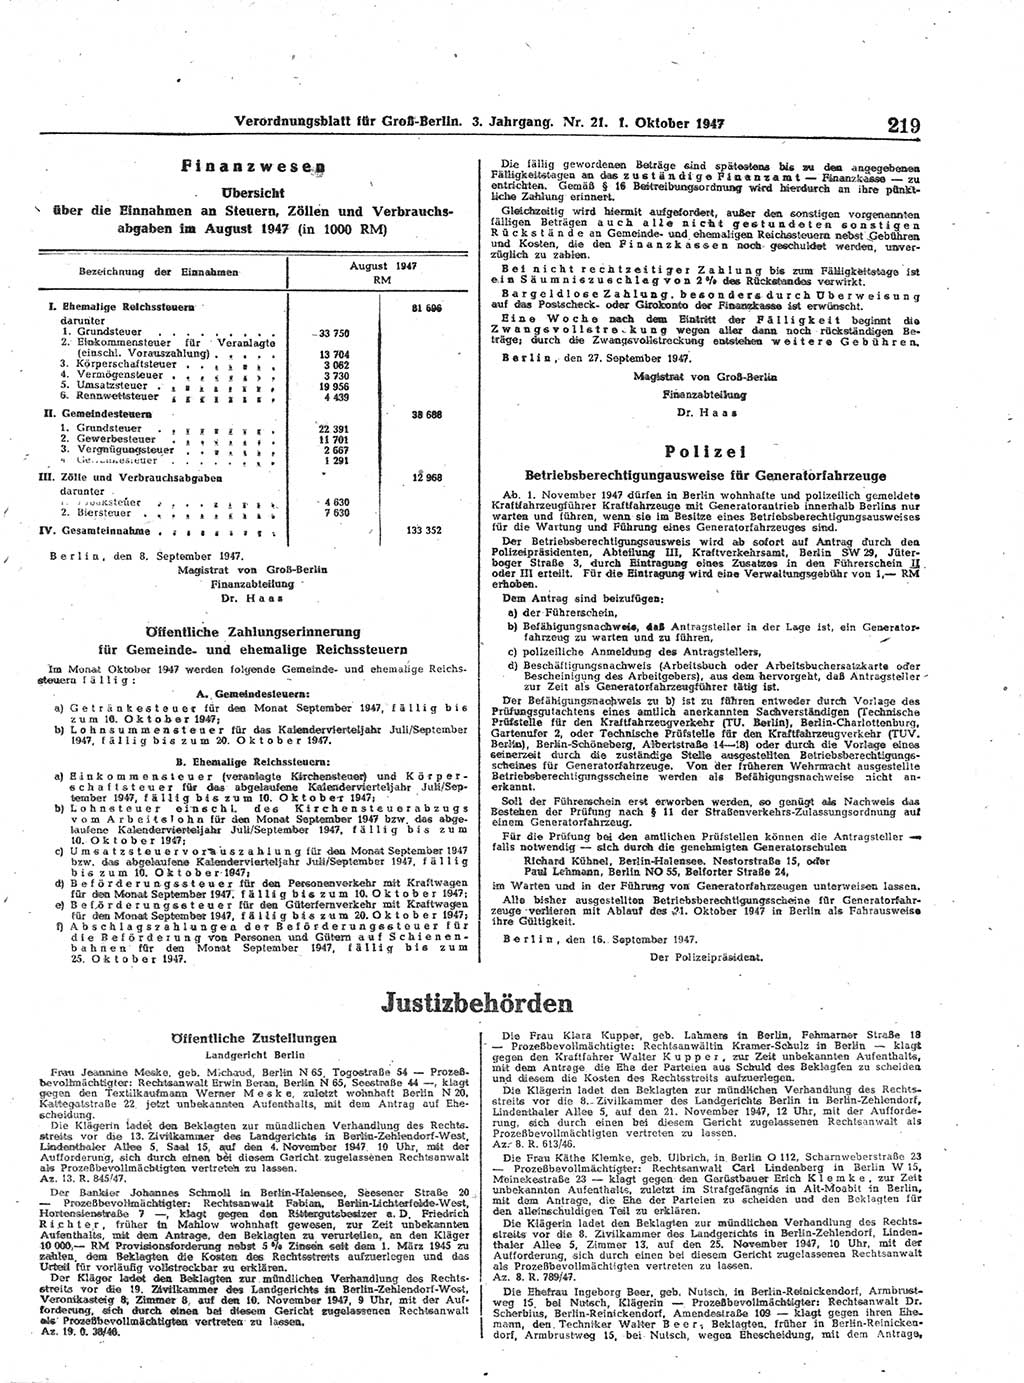 Verordnungsblatt (VOBl.) für Groß-Berlin 1947, Seite 219 (VOBl. Bln. 1947, S. 219)